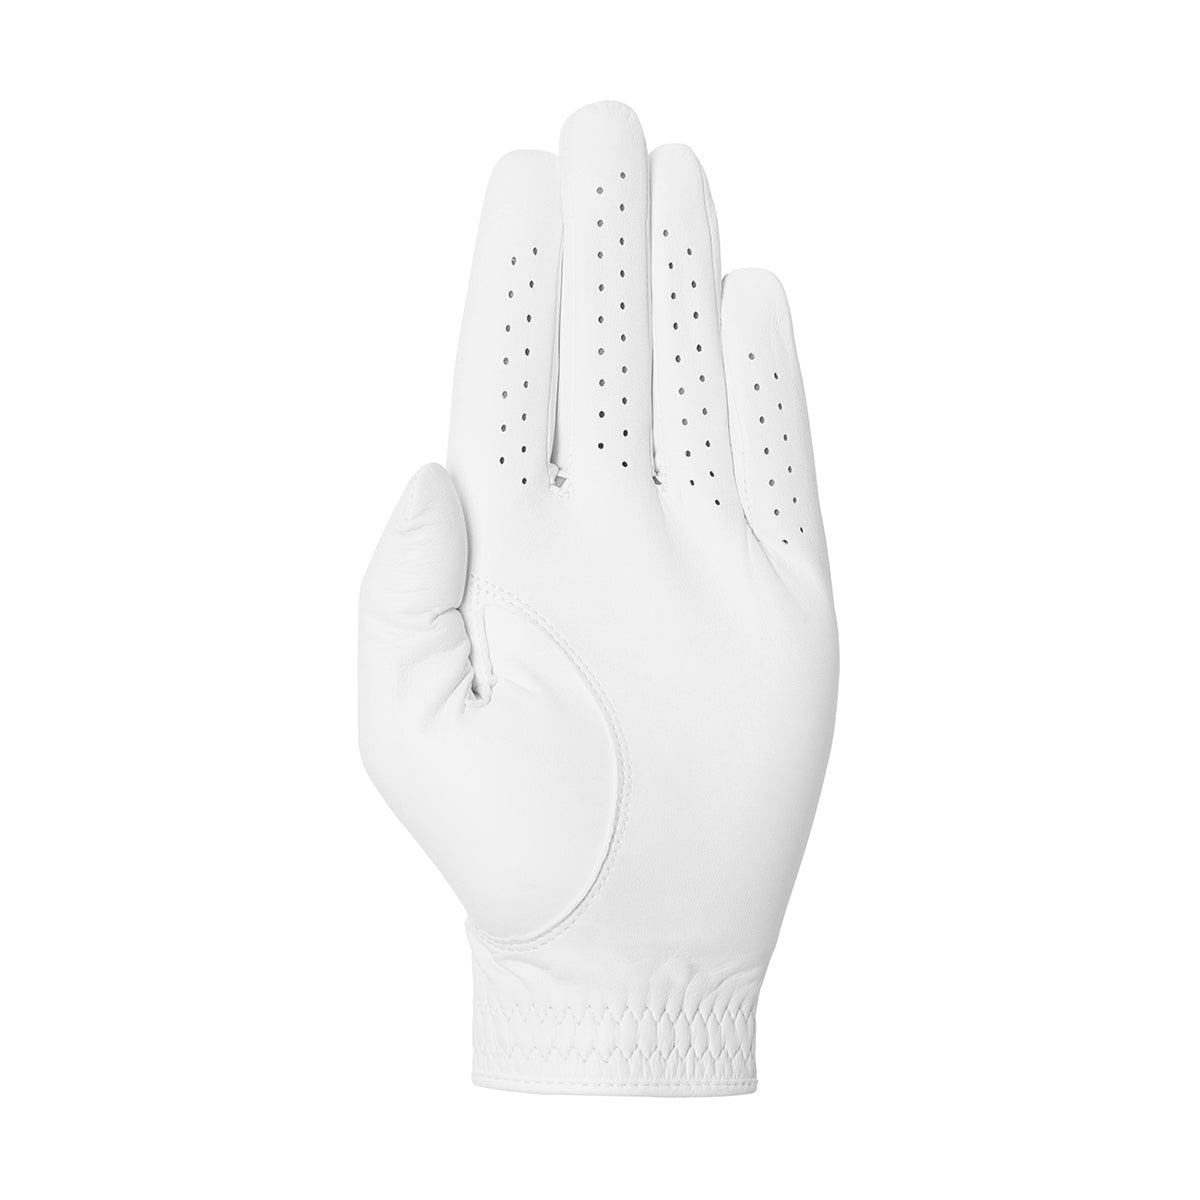 Men's Golf Glove Left Elite Pro Fontana White